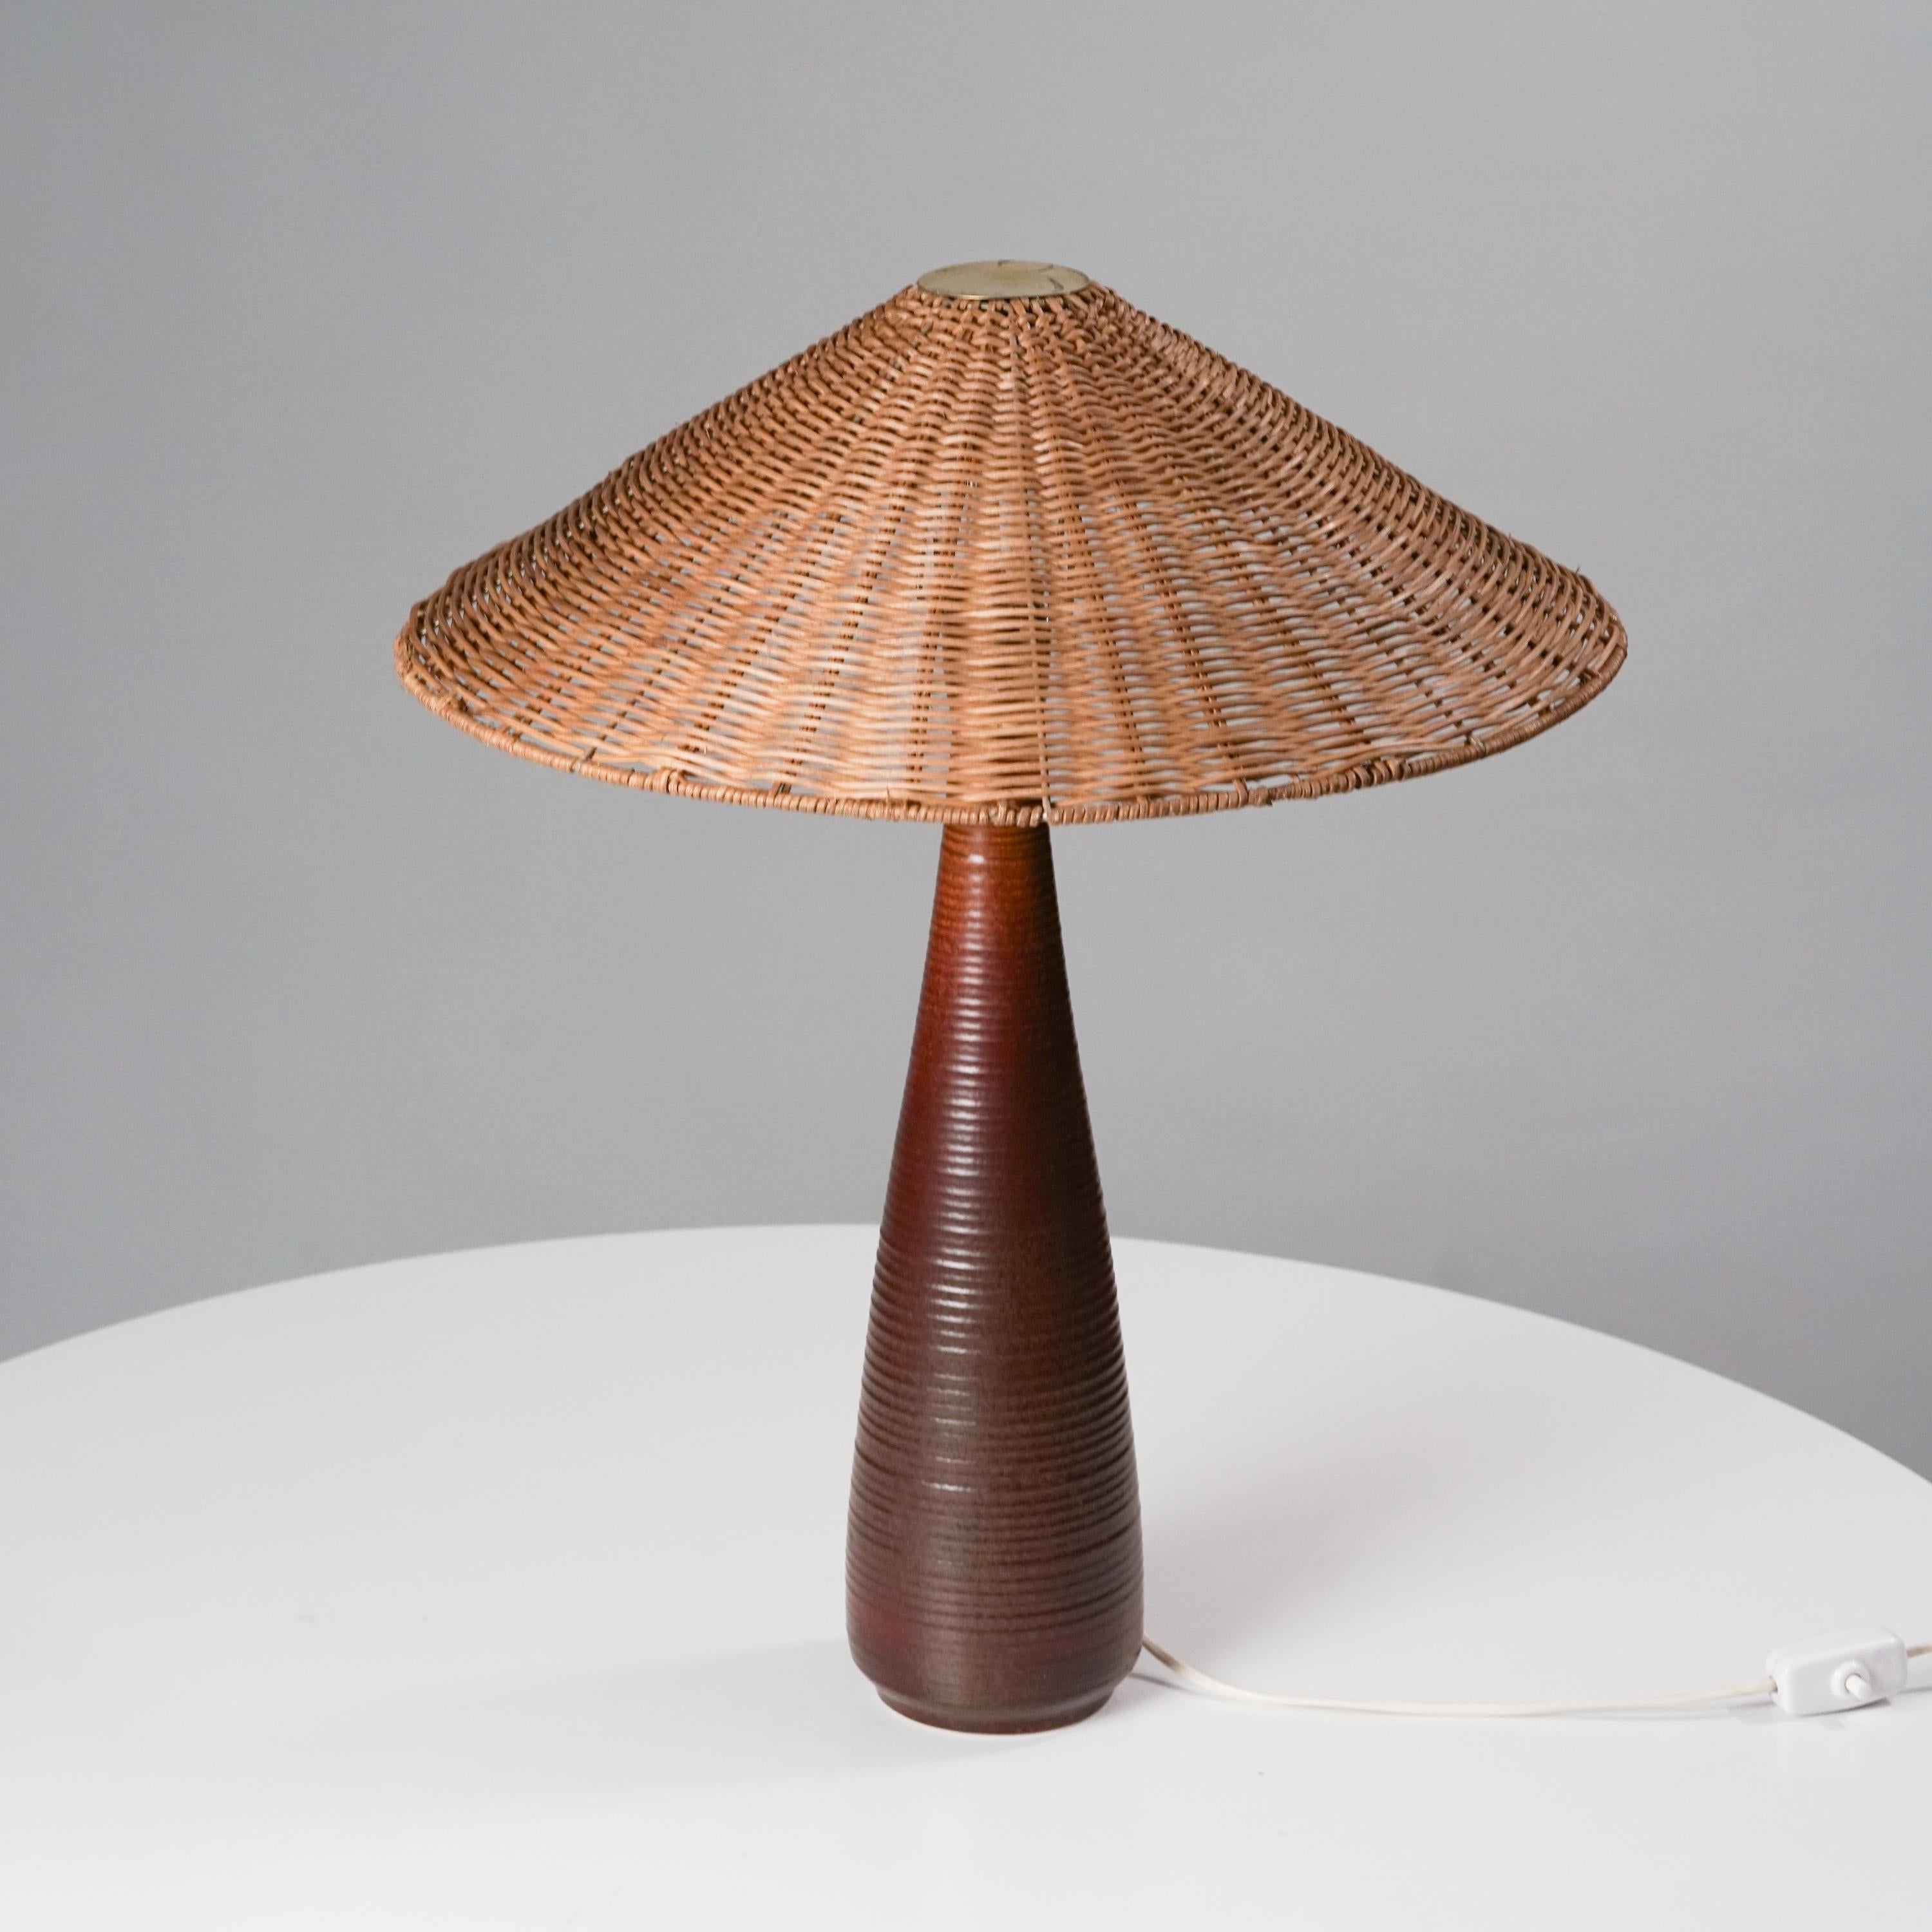 Lampe de table Arabia modèle 9-55 des années 1950. Cadre en céramique émaillée avec abat-jour en osier. Détails du laiton. Bon état vintage, patine mineure correspondant à l'âge et à l'utilisation. 

